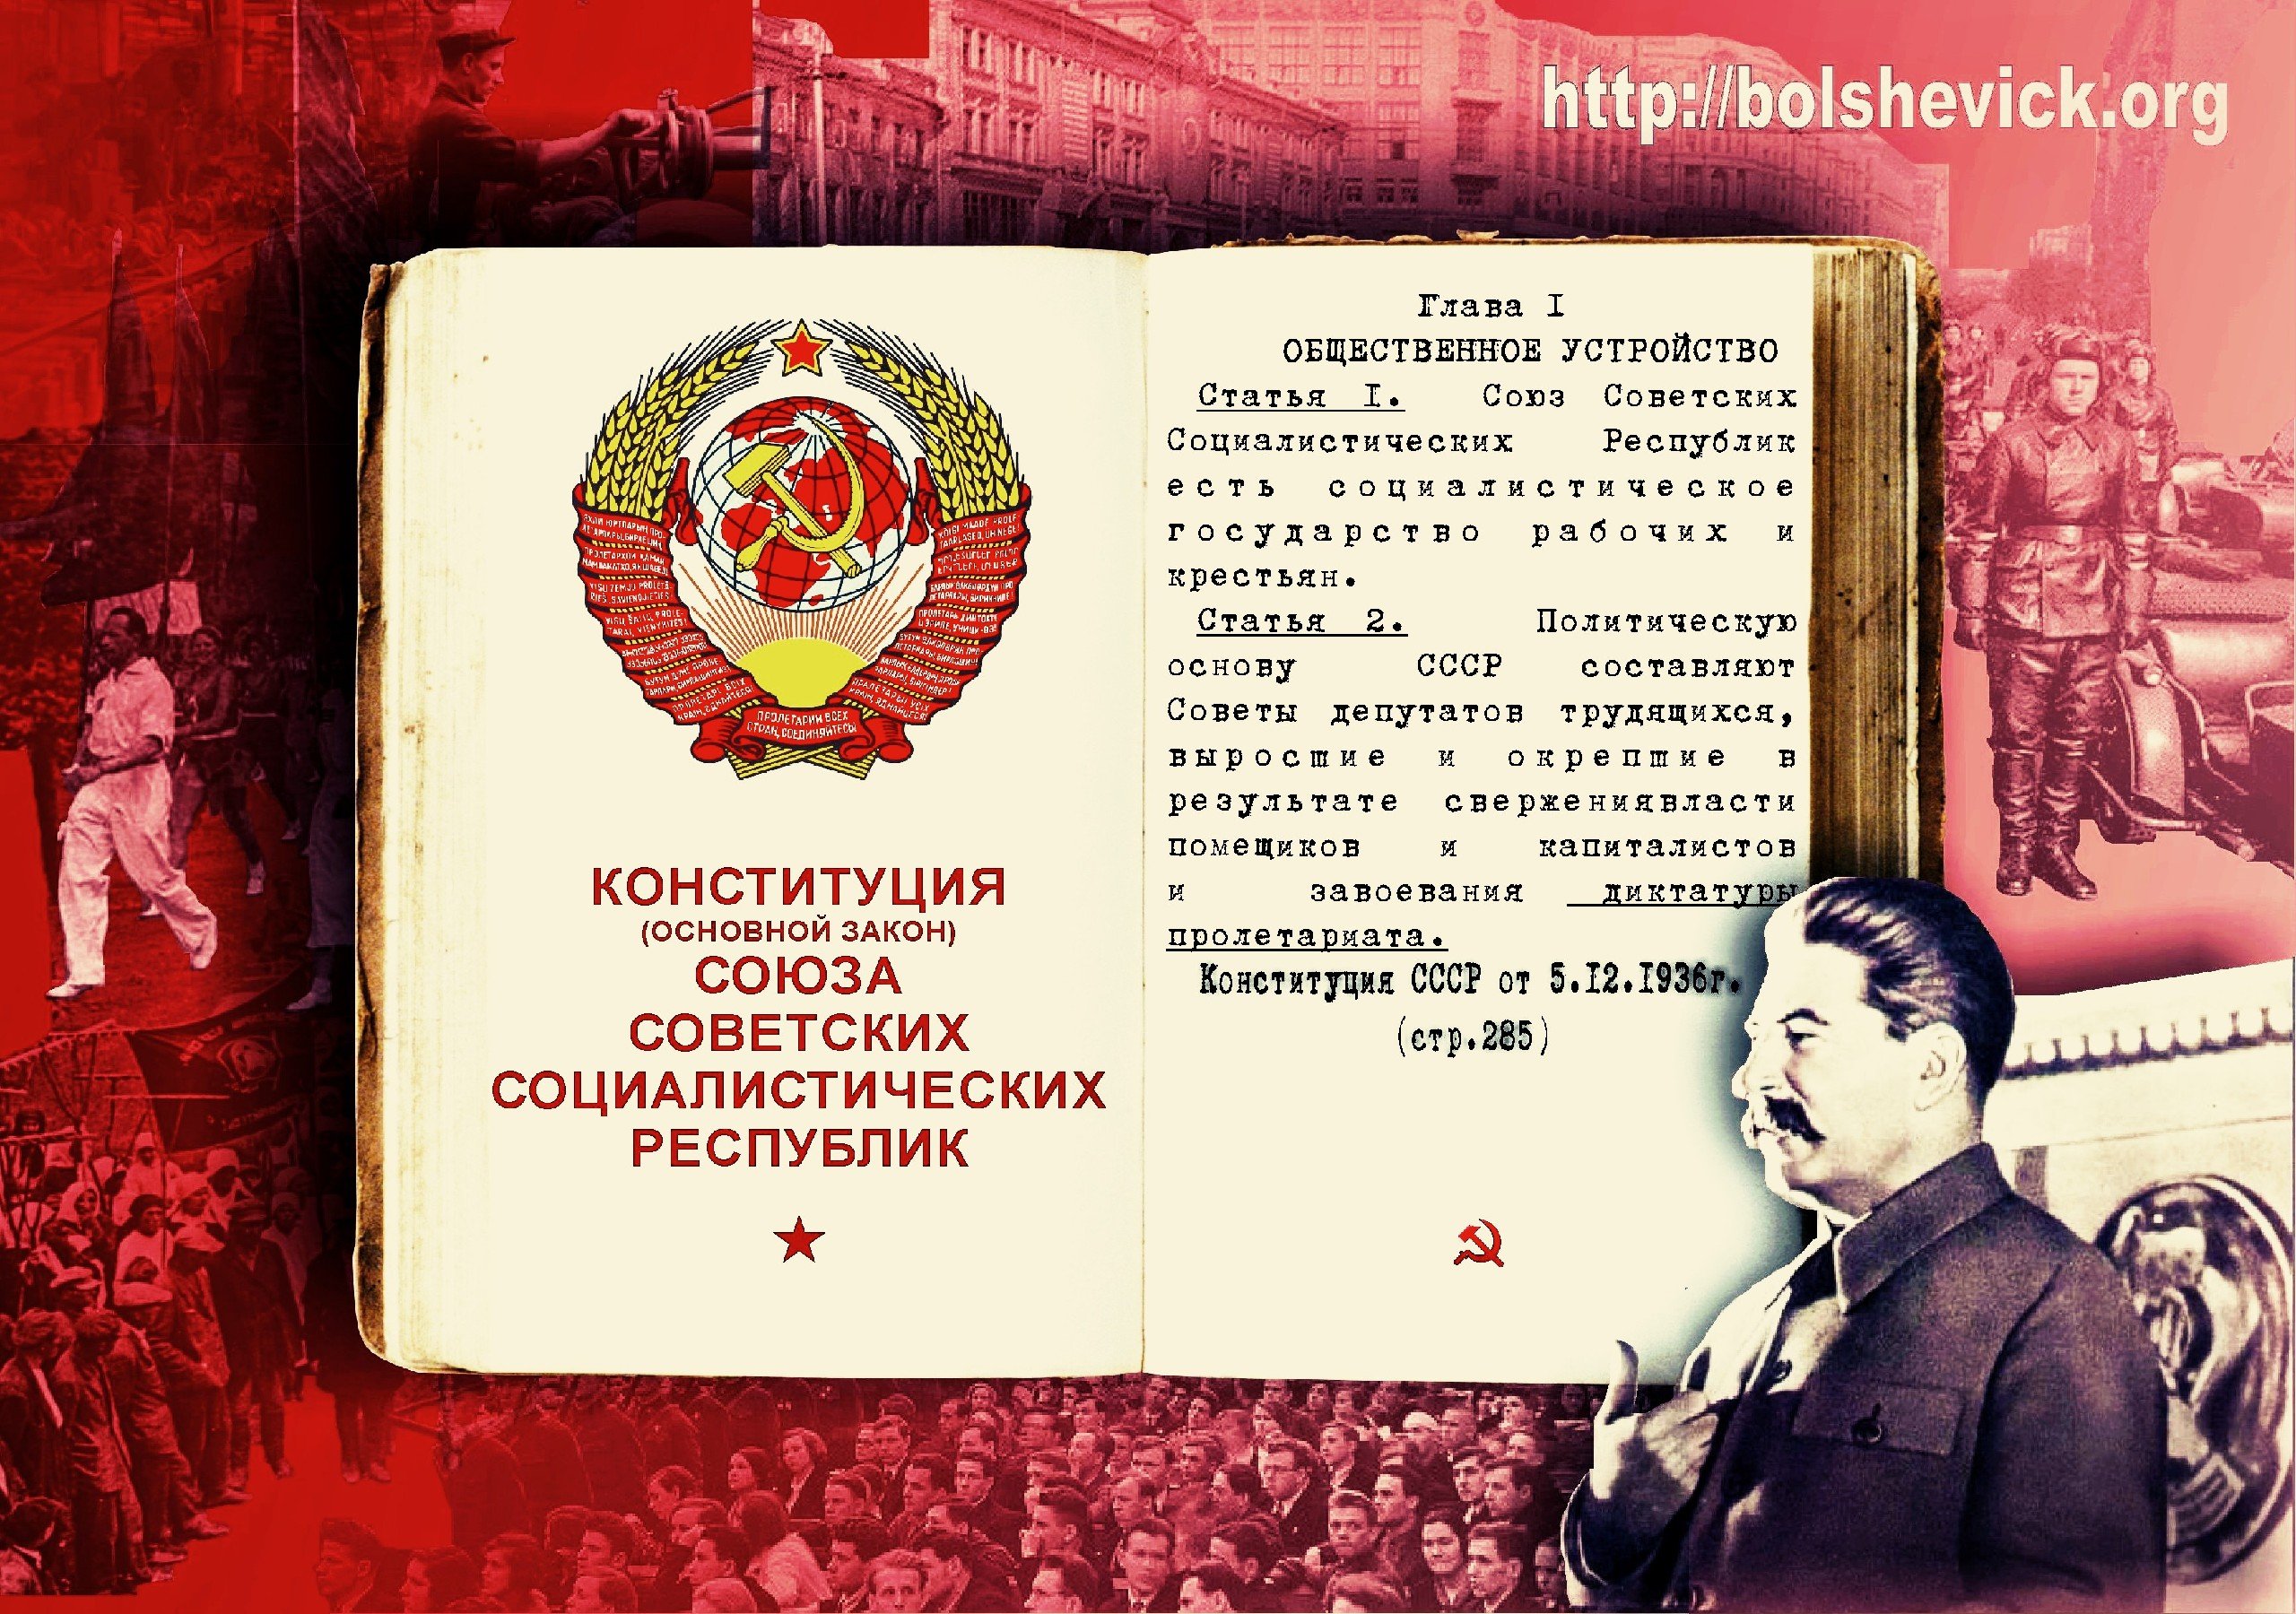 Конституция ссср часто именуемая в литературе сталинской. Конституция Сталина 1936. Конституция советского Союза 1936 года. Конституция СССР 5 декабря 1936 года. Конституция СССР 1936 года сталинская.